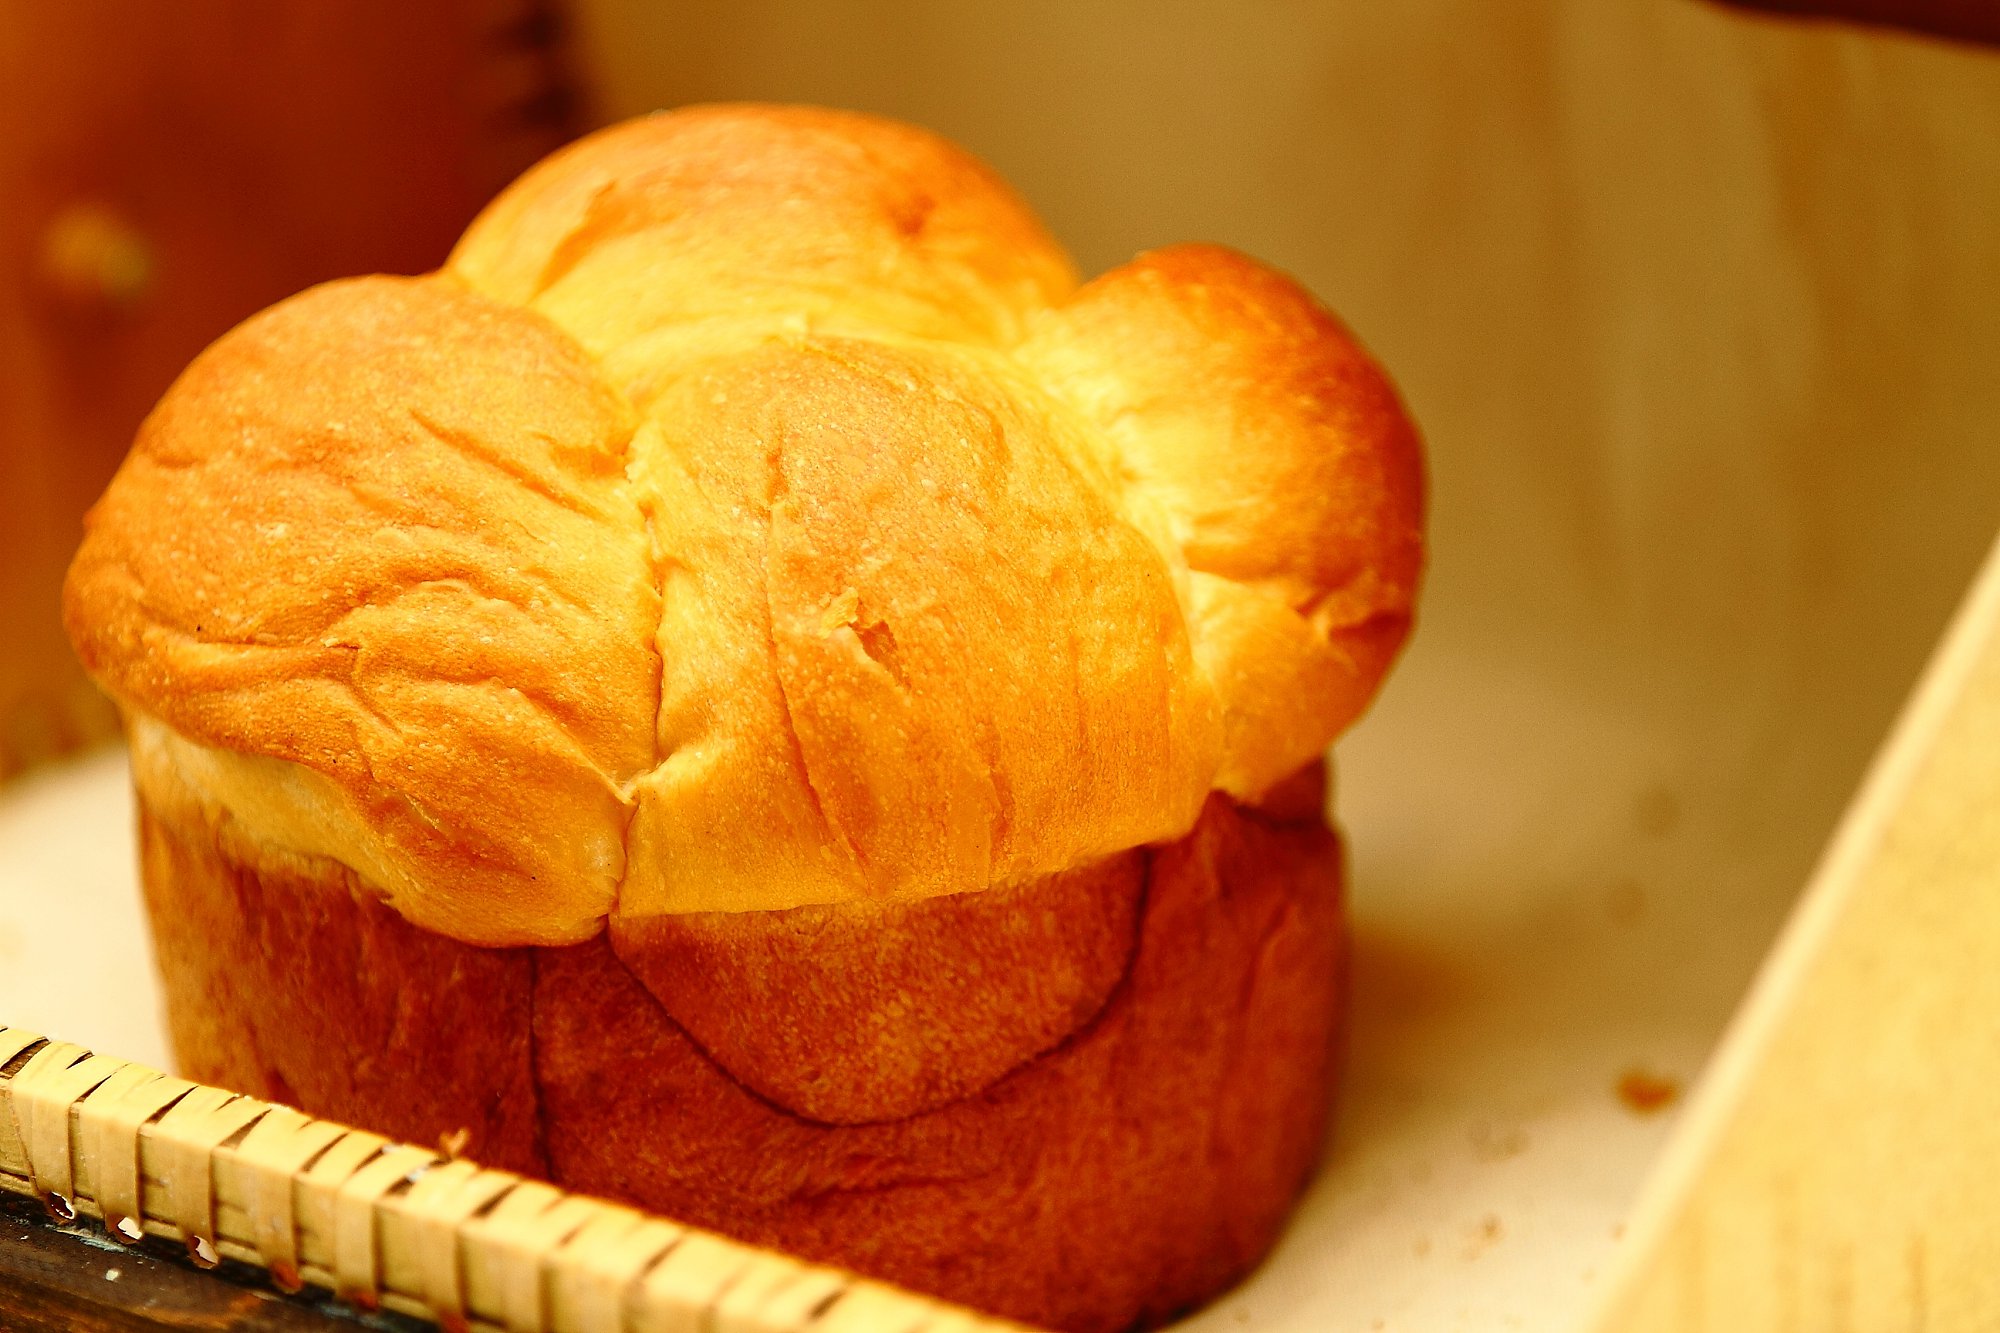 【美食】俄罗斯的面包